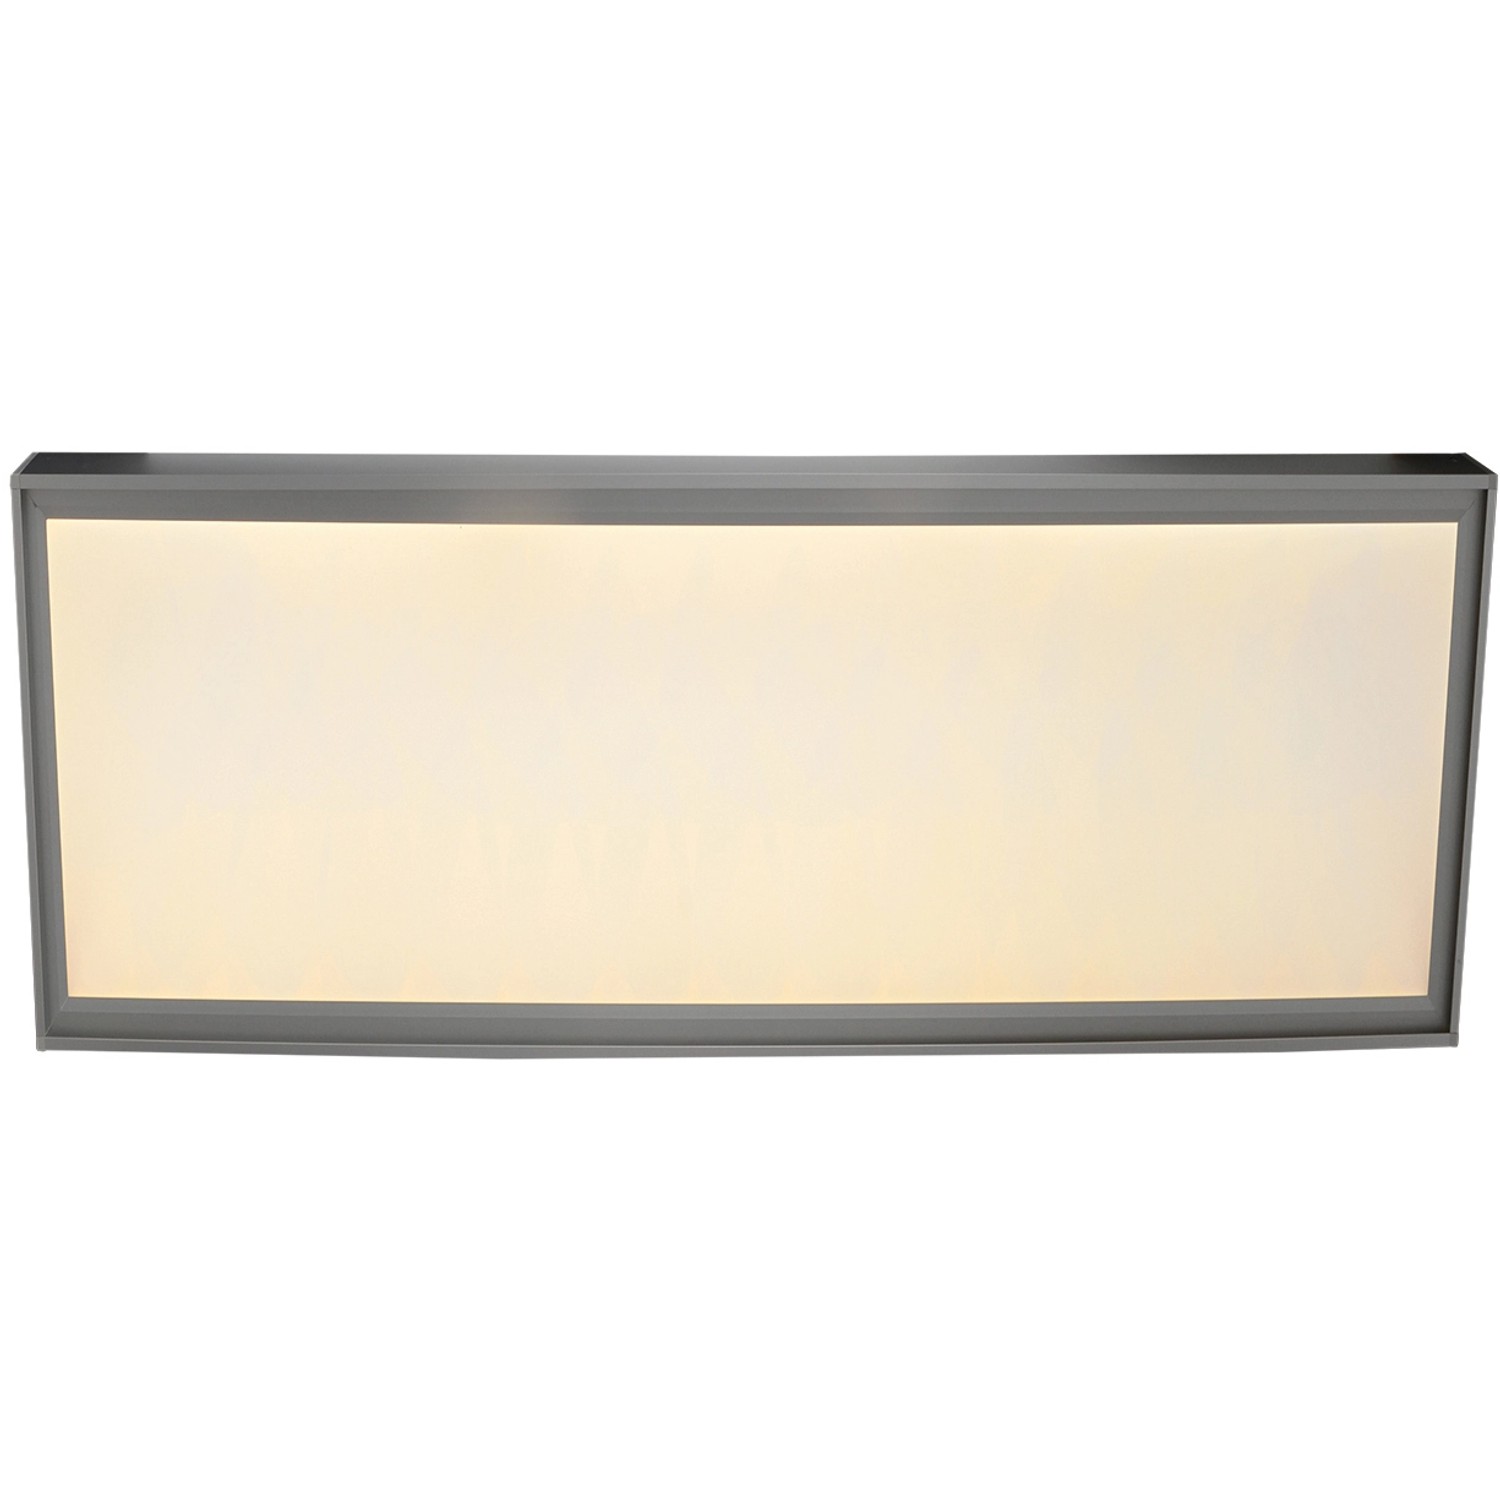 Näve LED-Panel zum Ein- oder Aufbau Panelta 59,5 x 29,5 cm Aluminium-Weiß